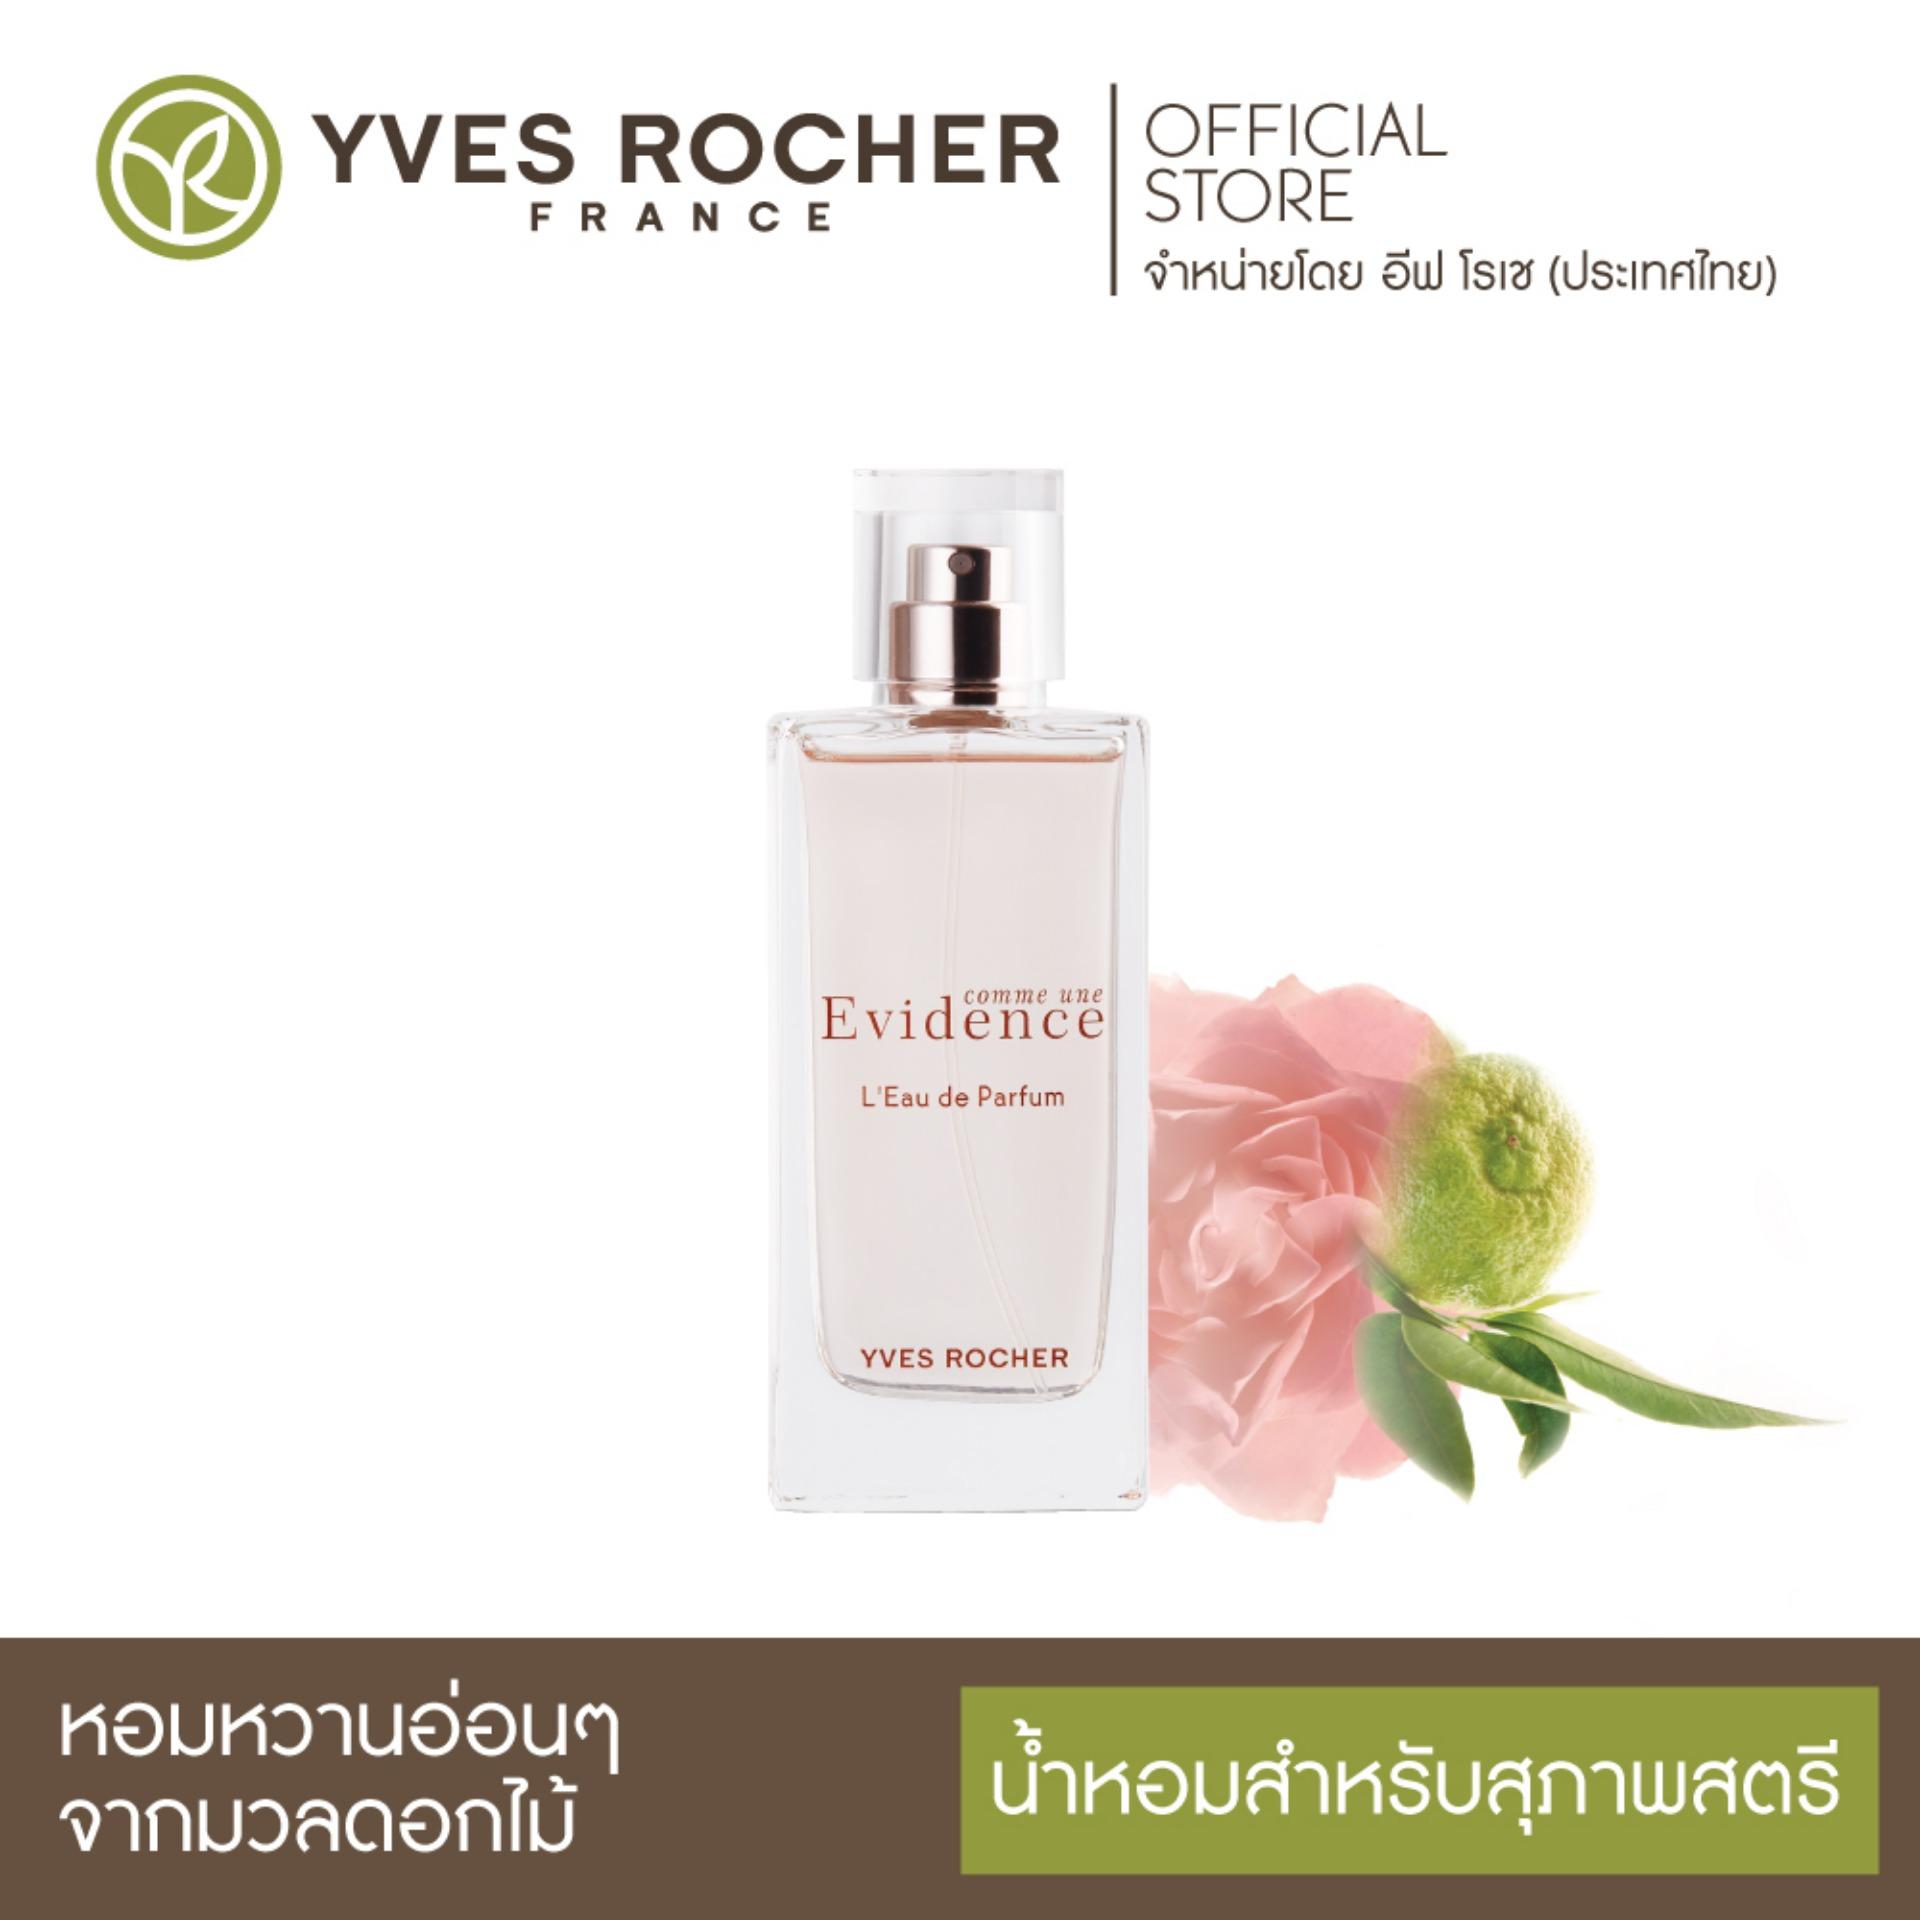 Yves Rocher Comme Une Evidence Eau de Parfum 50ml